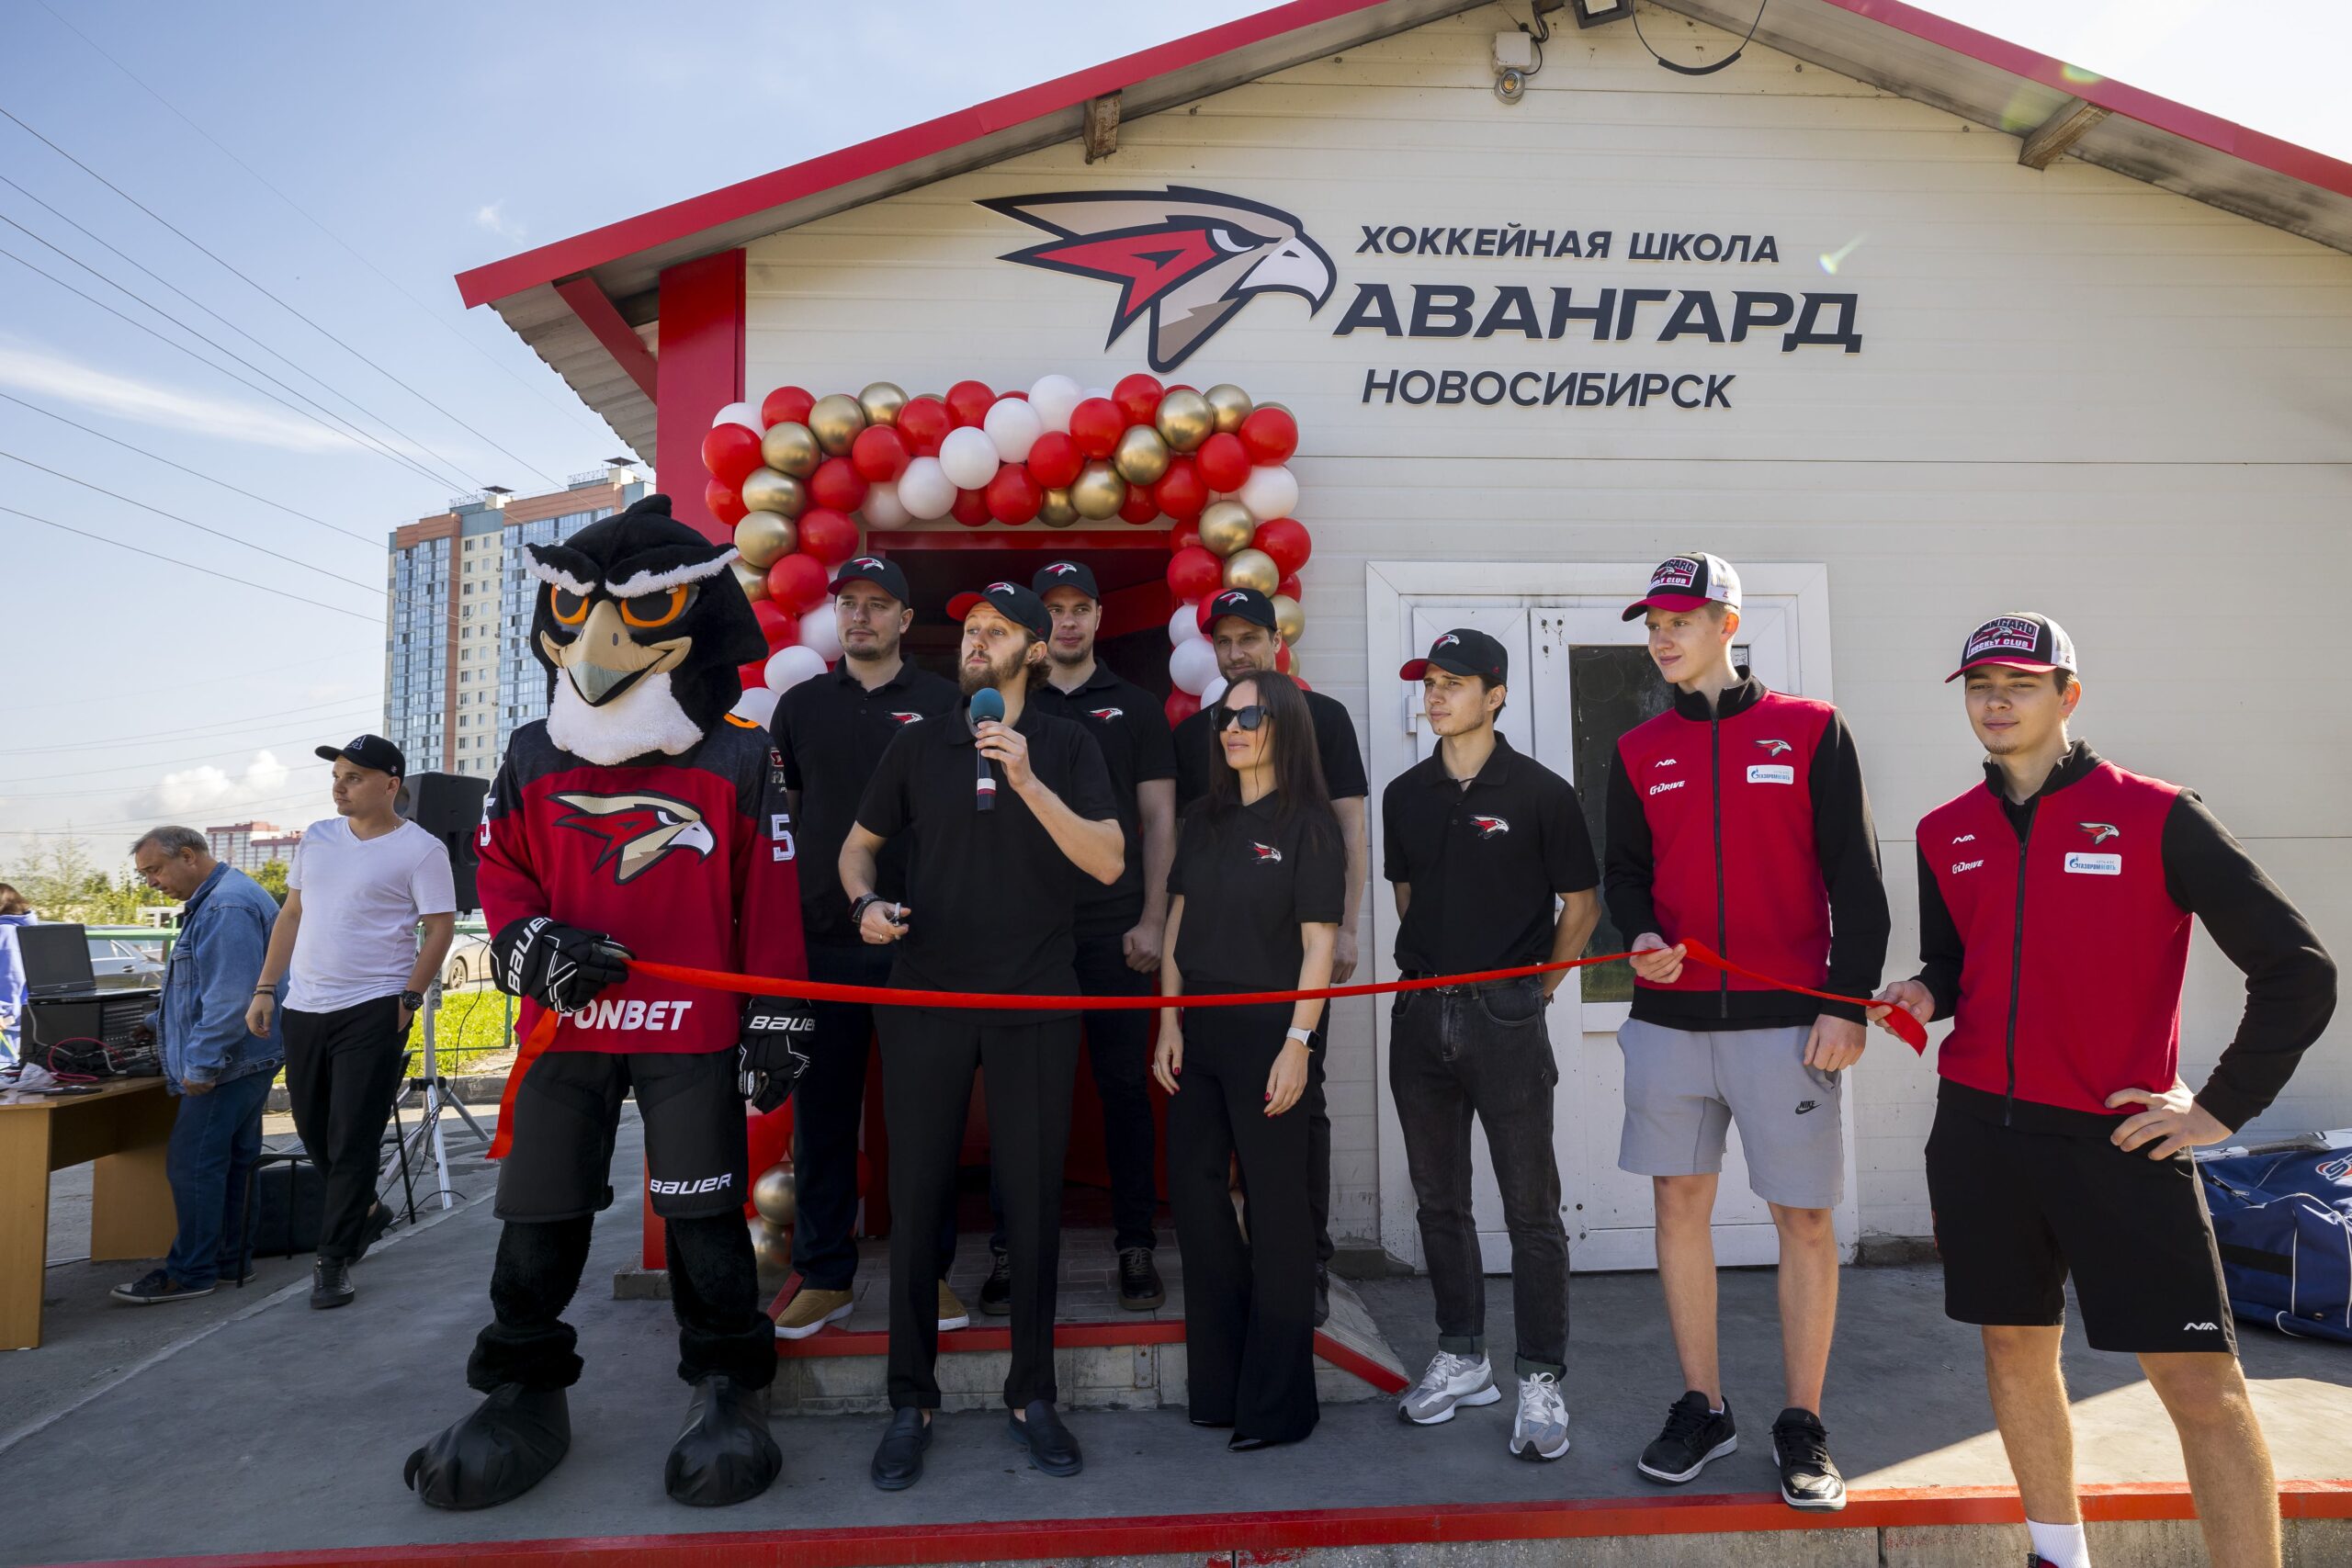 В Новосибирске торжественно открылась франшиза хоккейной школы «Авангард»